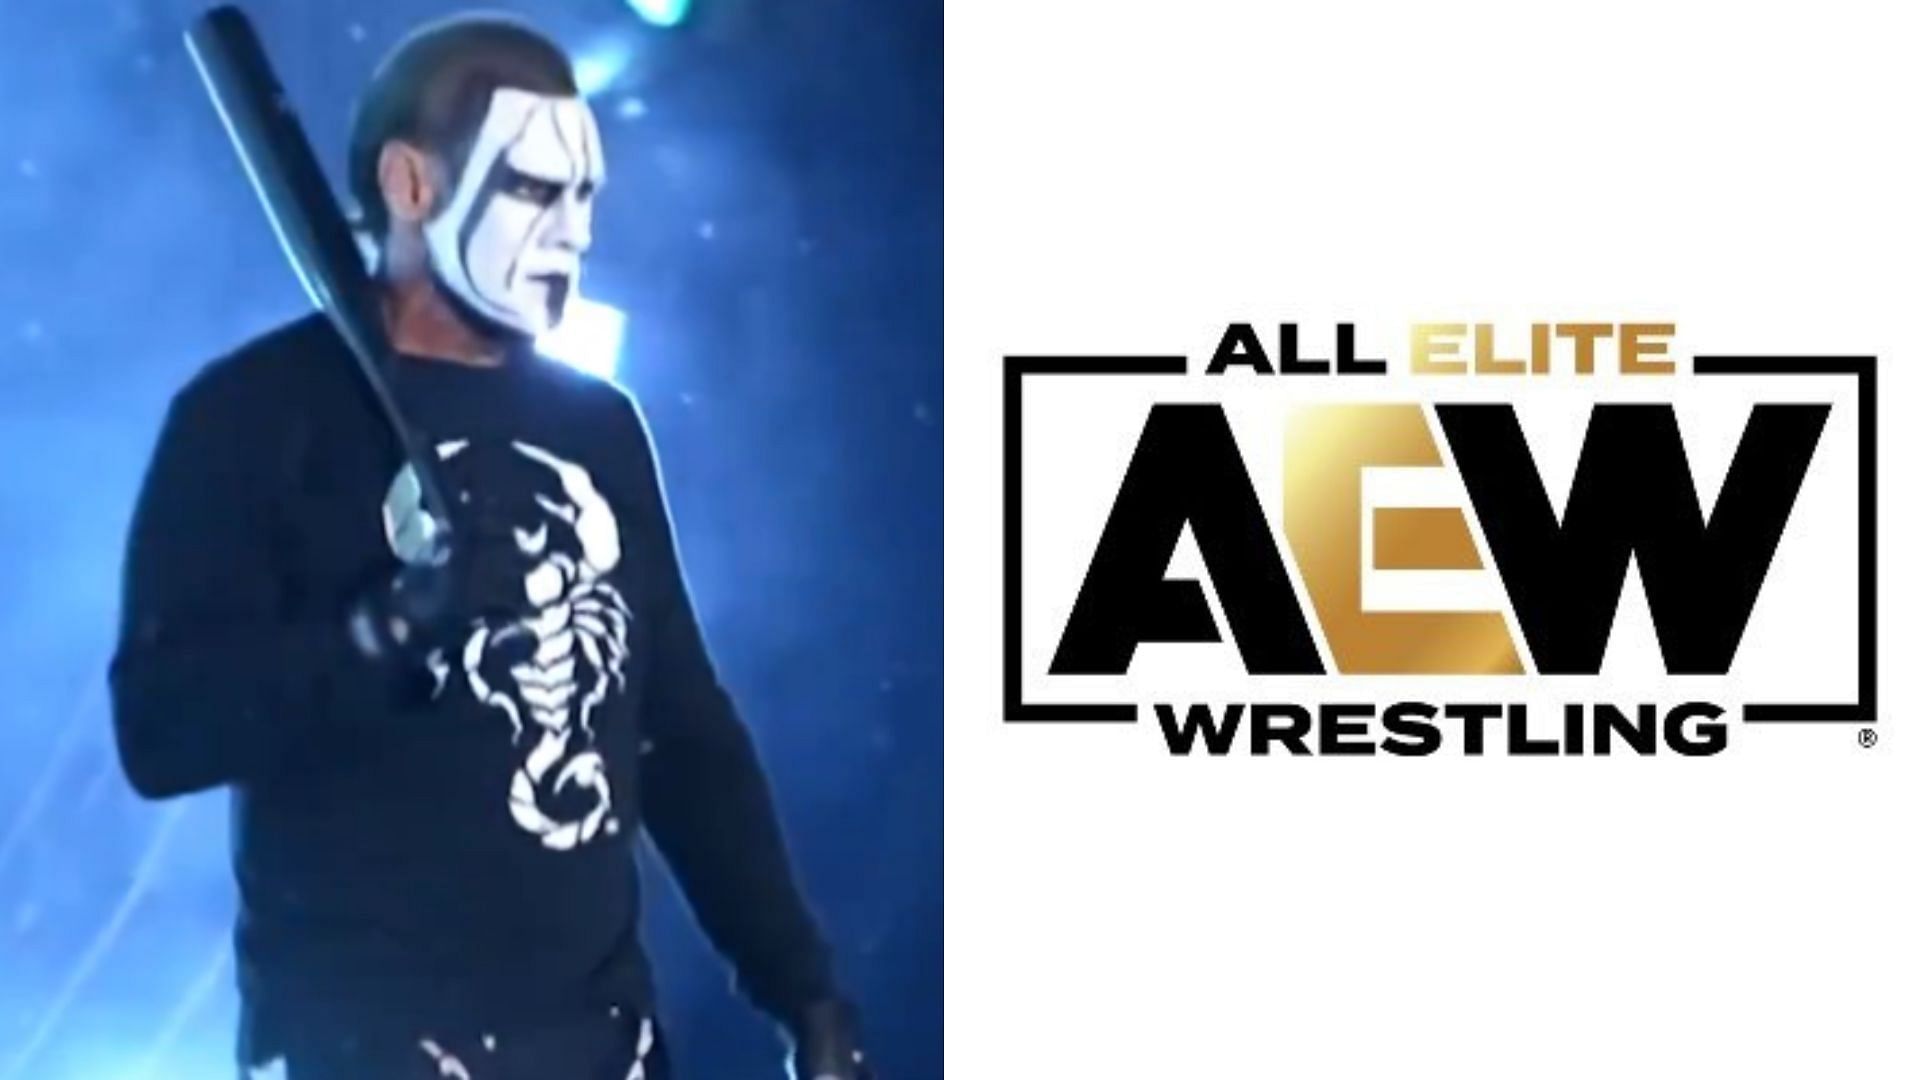 Sting joined All Elite Wrestling in December 2020